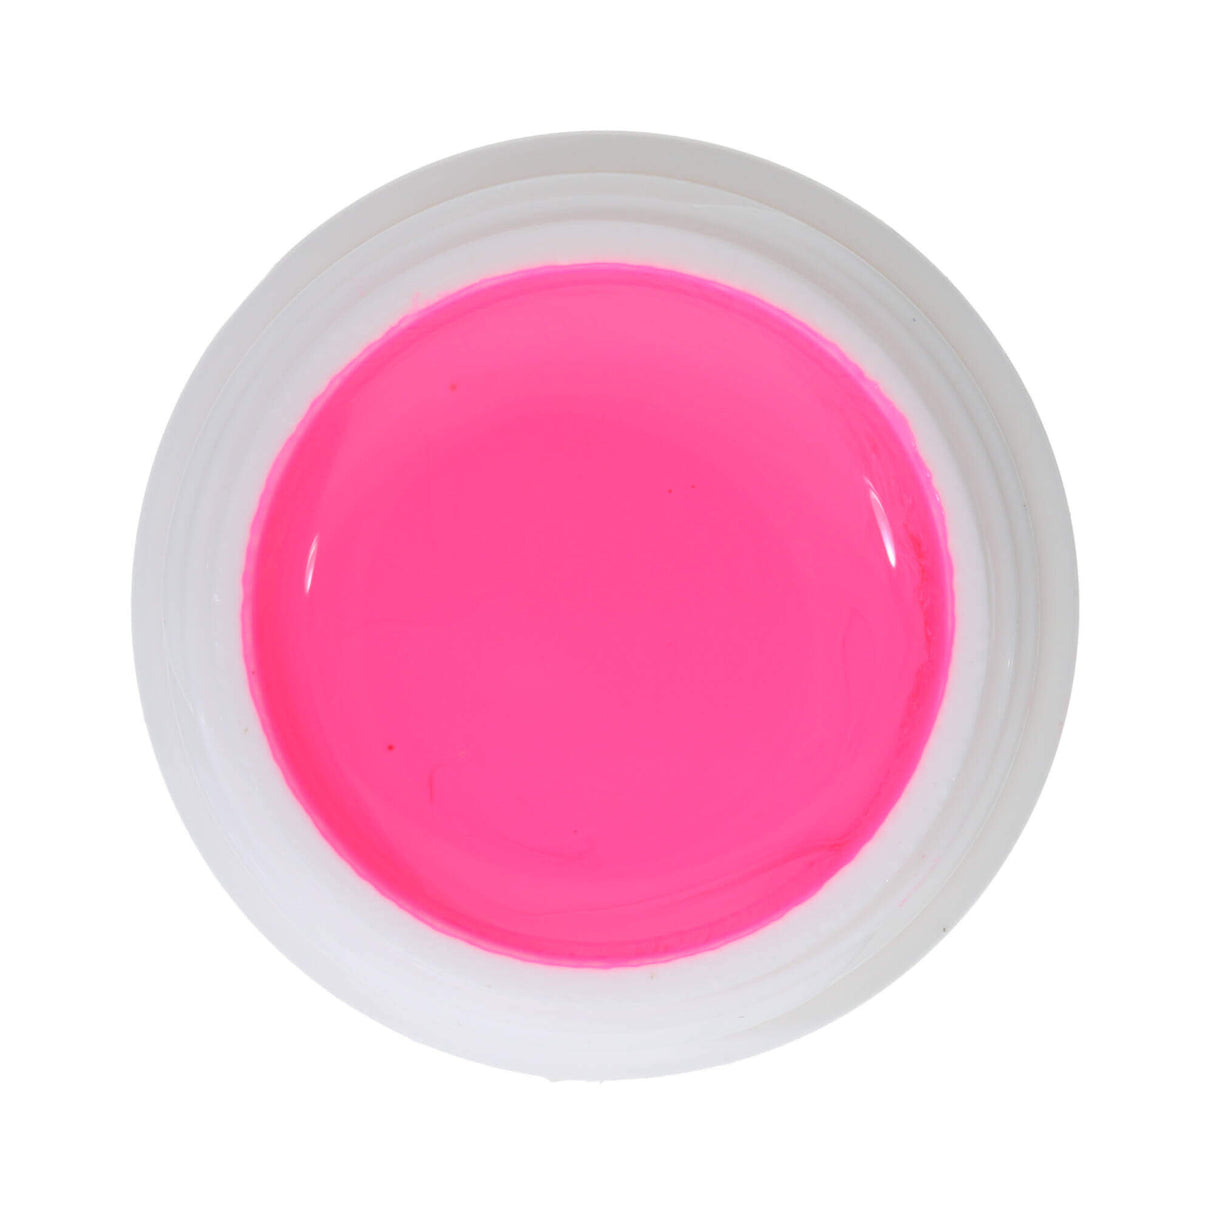 # 557 Gel tạo màu DECO cao cấp 5ml Màu hồng neon KHÔNG DÙNG CHO MỸ PHẨM